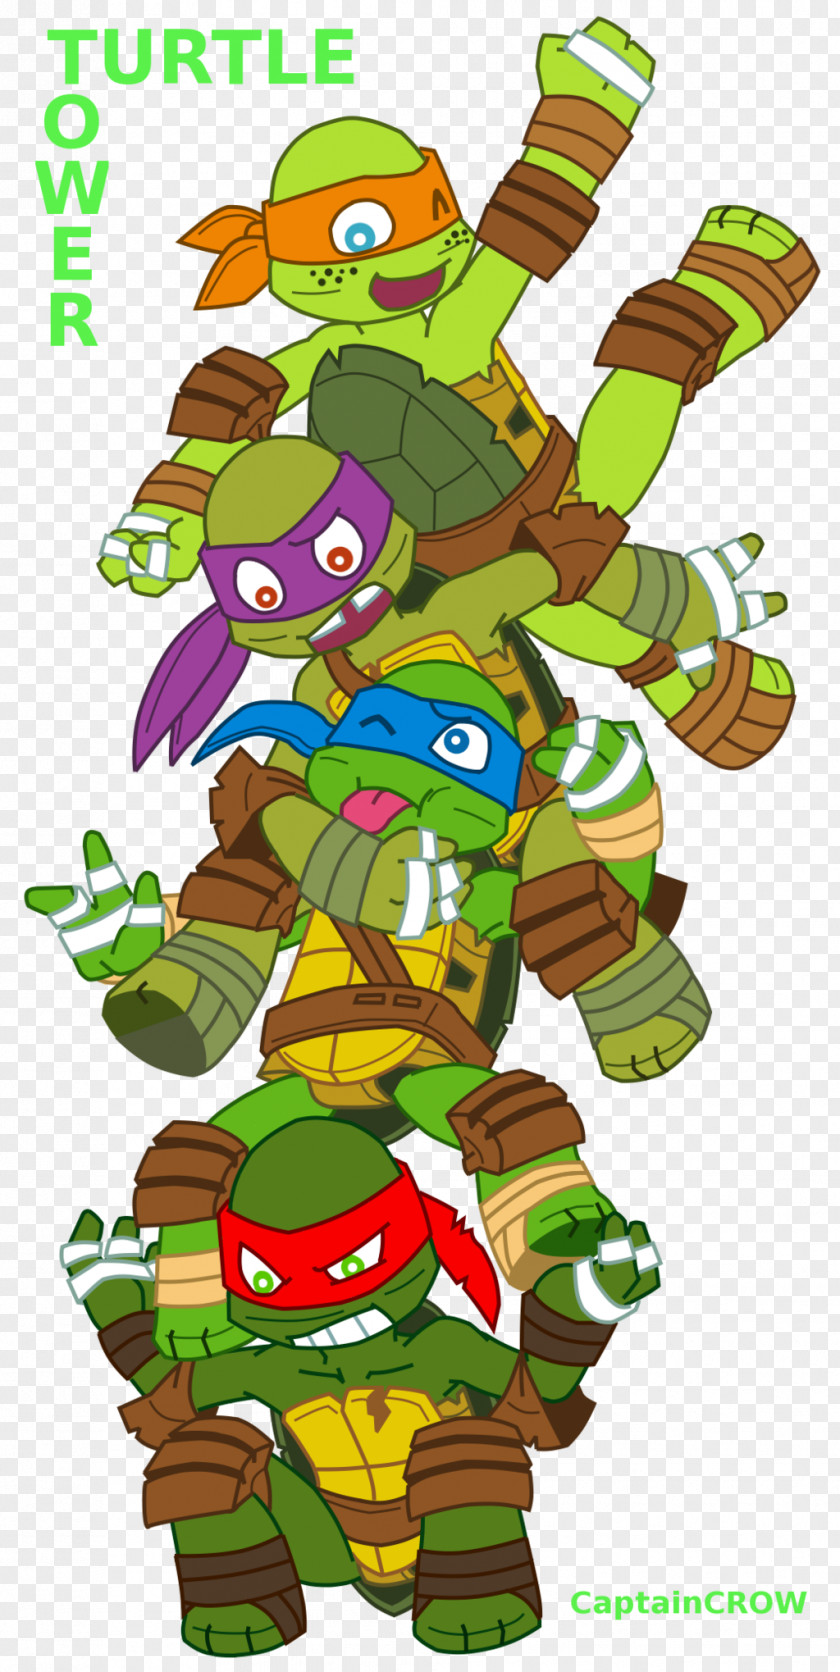 Turtle Tower Raphael Michaelangelo Teenage Mutant Ninja Turtles Splinter Mutants In Fiction PNG